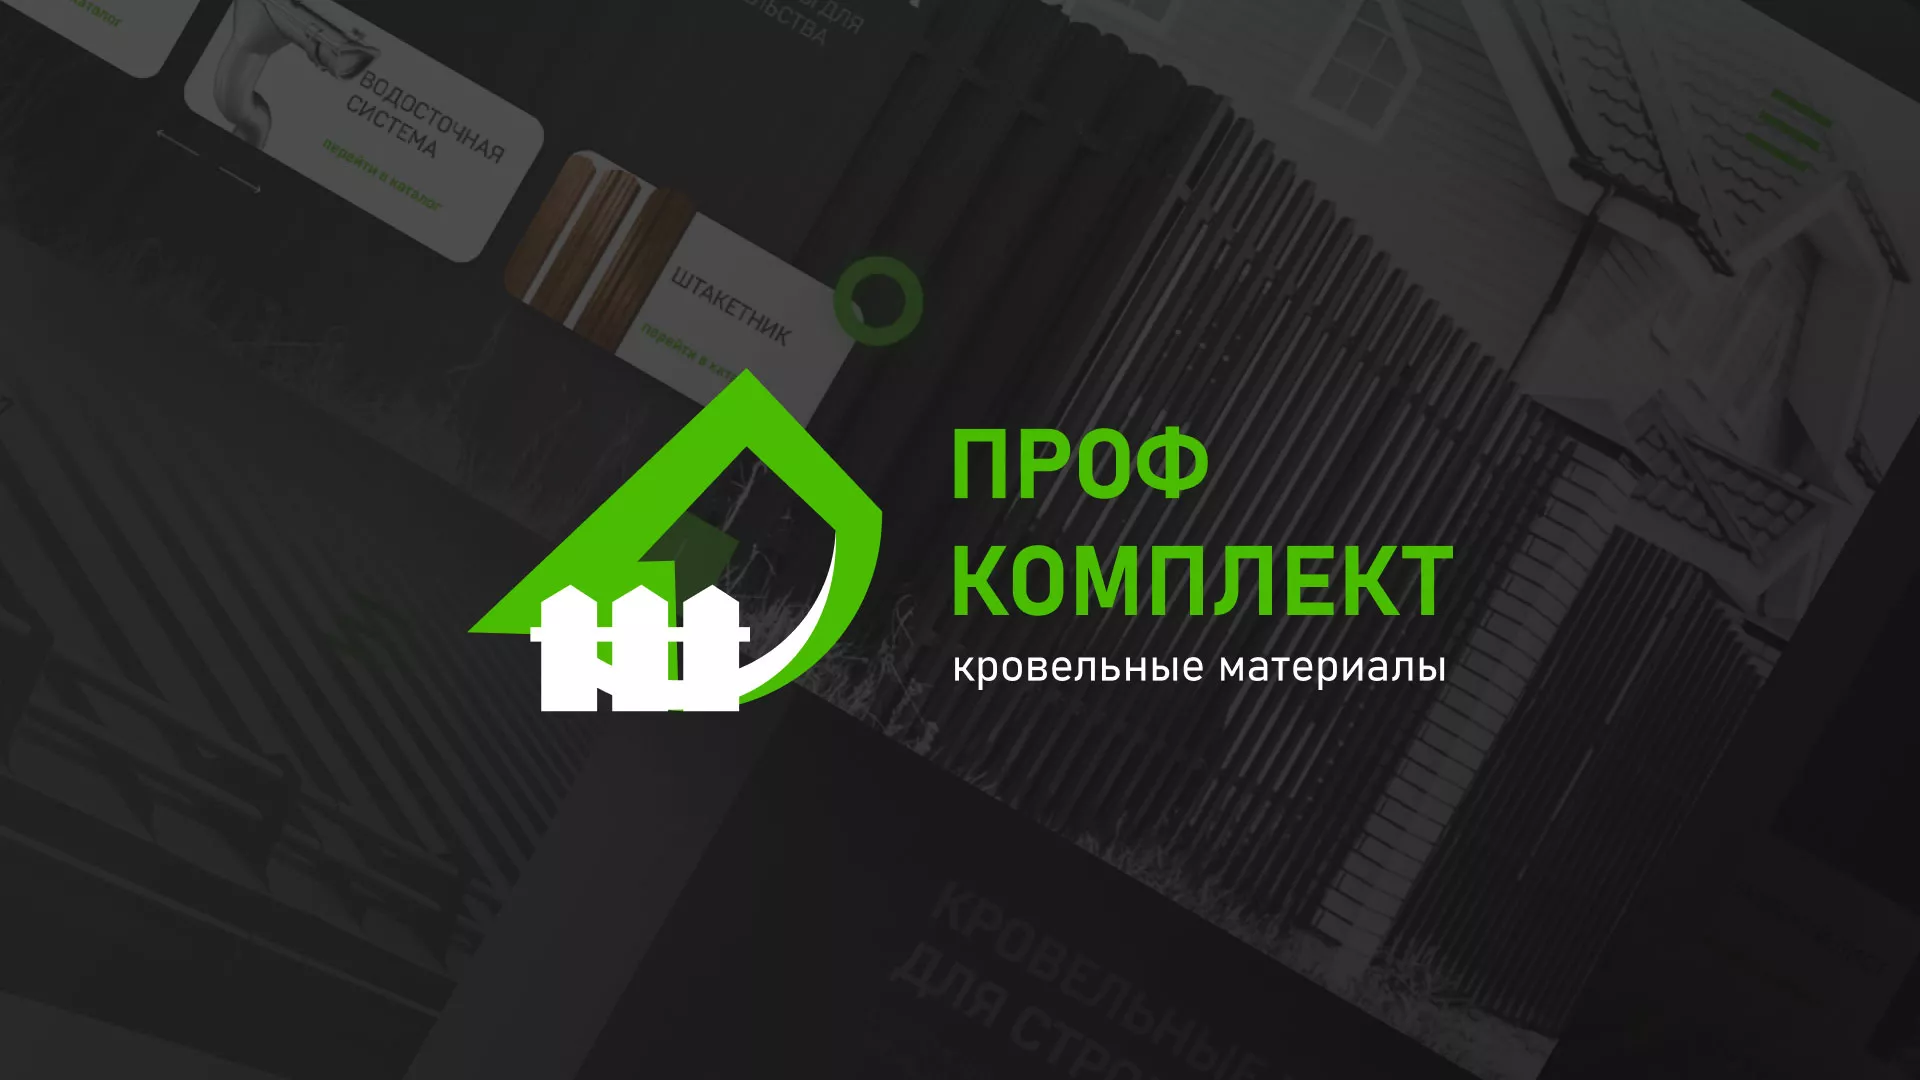 Создание сайта компании «Проф Комплект» в Улане-Удэ